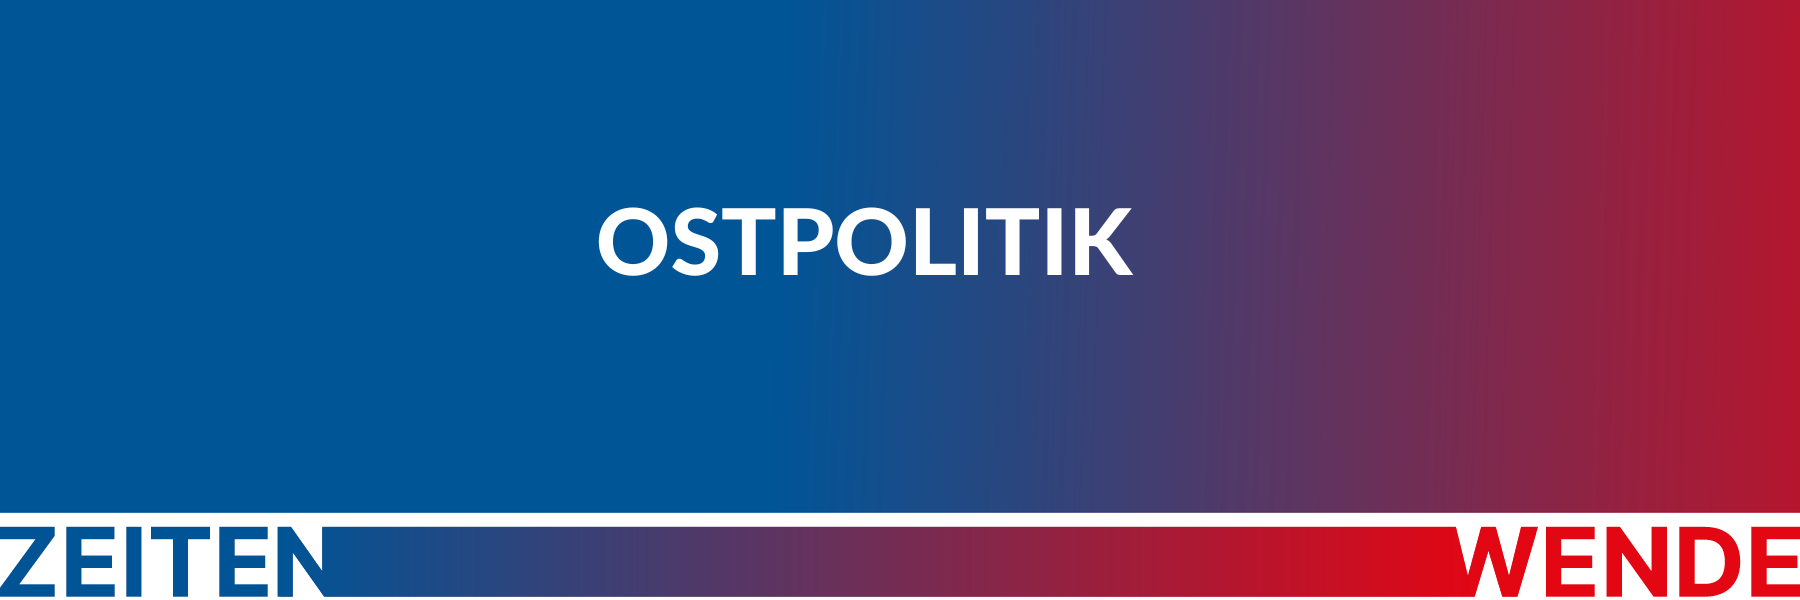 Header-Grafik mit Farbverlauf und Schriftzug "Ostpolitik"